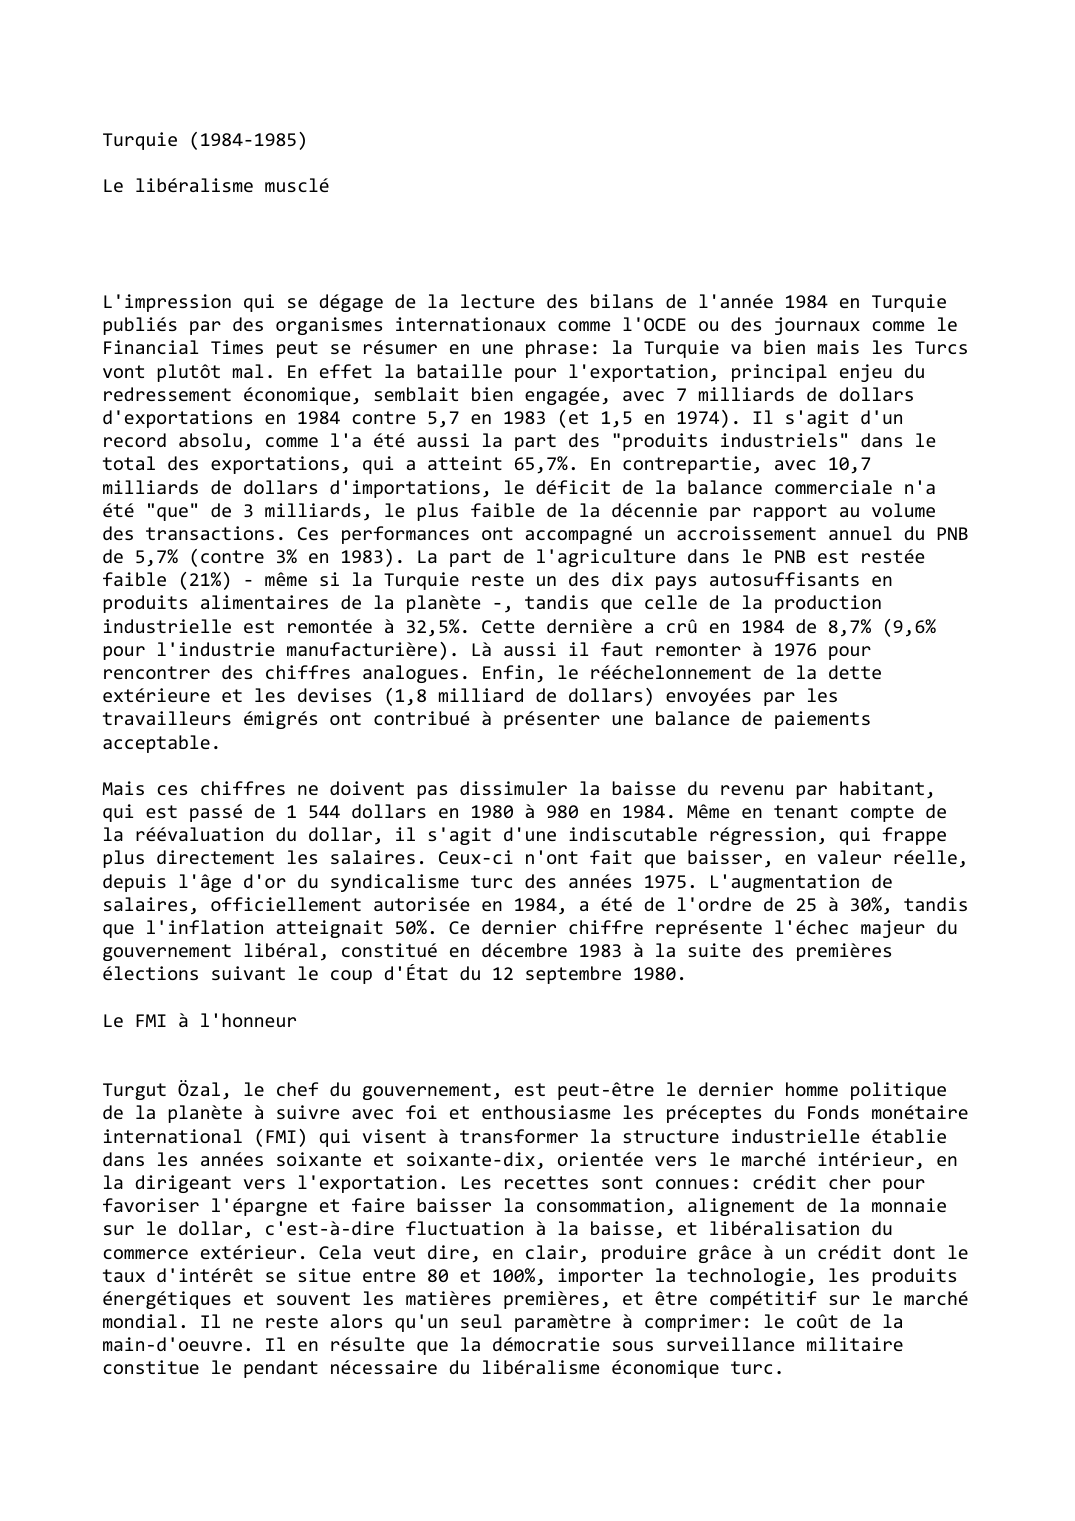 Prévisualisation du document Turquie (1984-1985)

Le libéralisme musclé